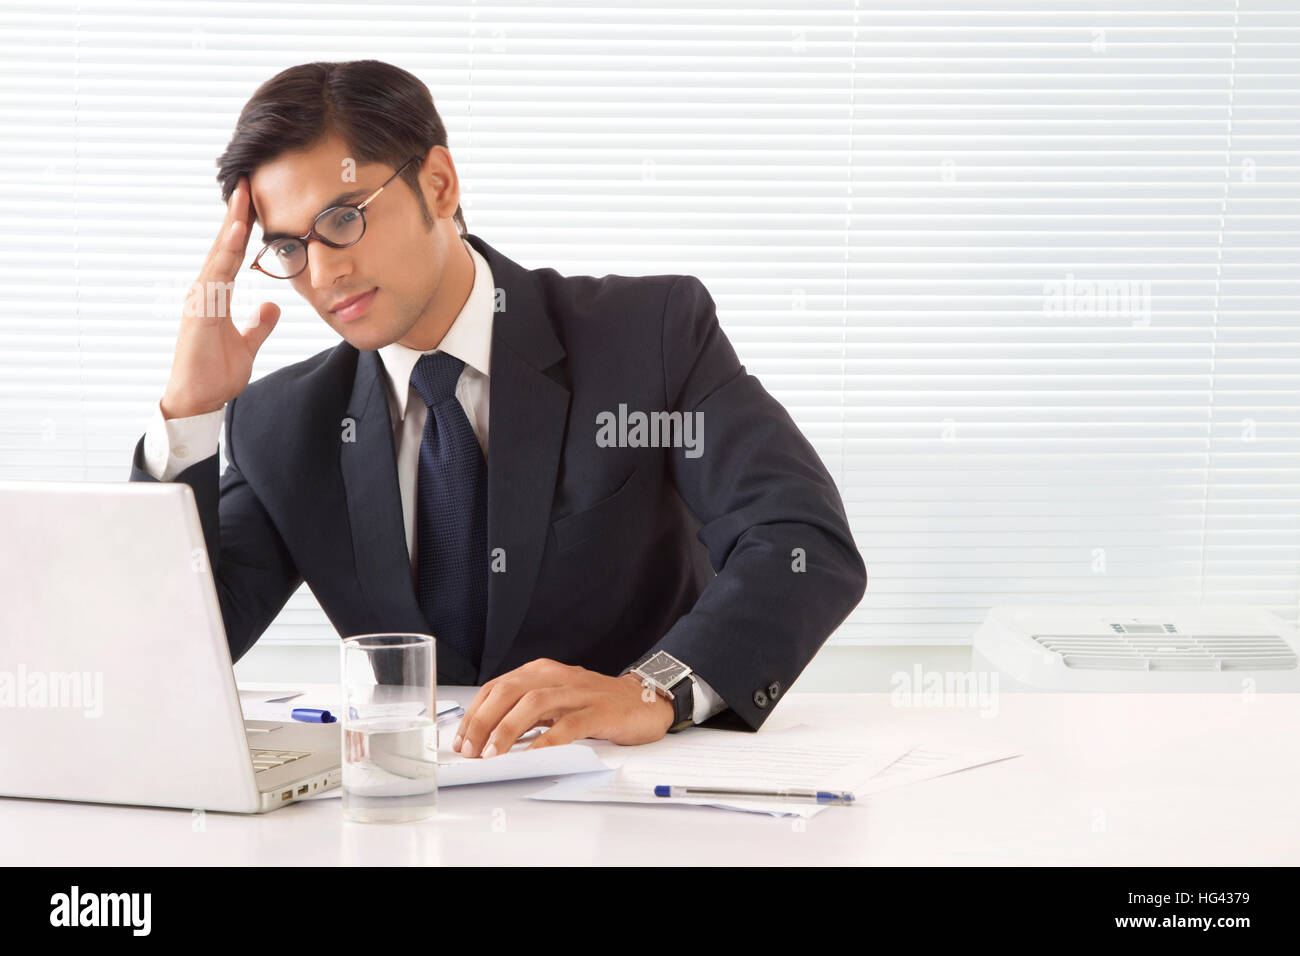 Jeune homme professionnel à la main tendue avec le front while looking at laptop computer in office Banque D'Images